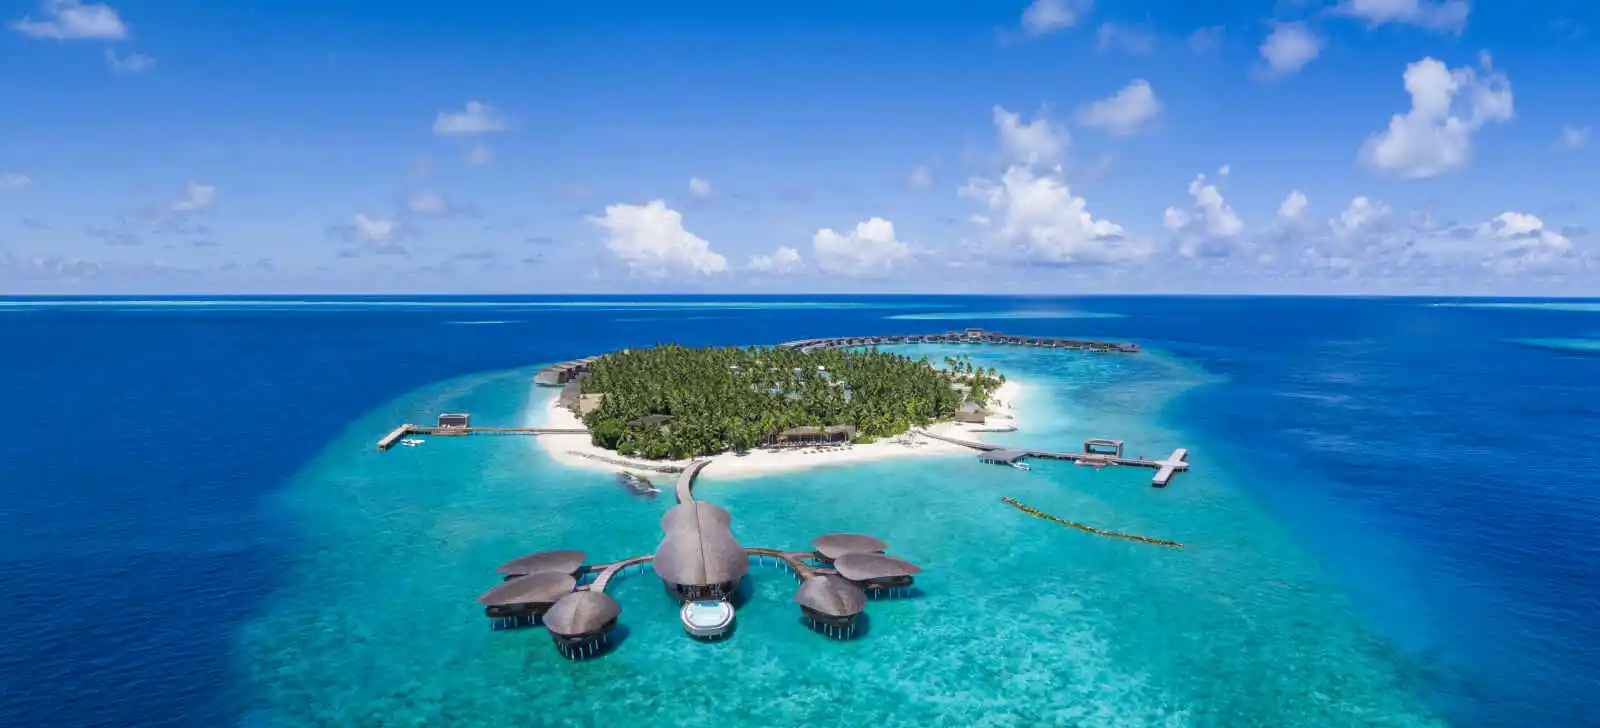 The St. Regis Maldives Vommuli Resort - 5*